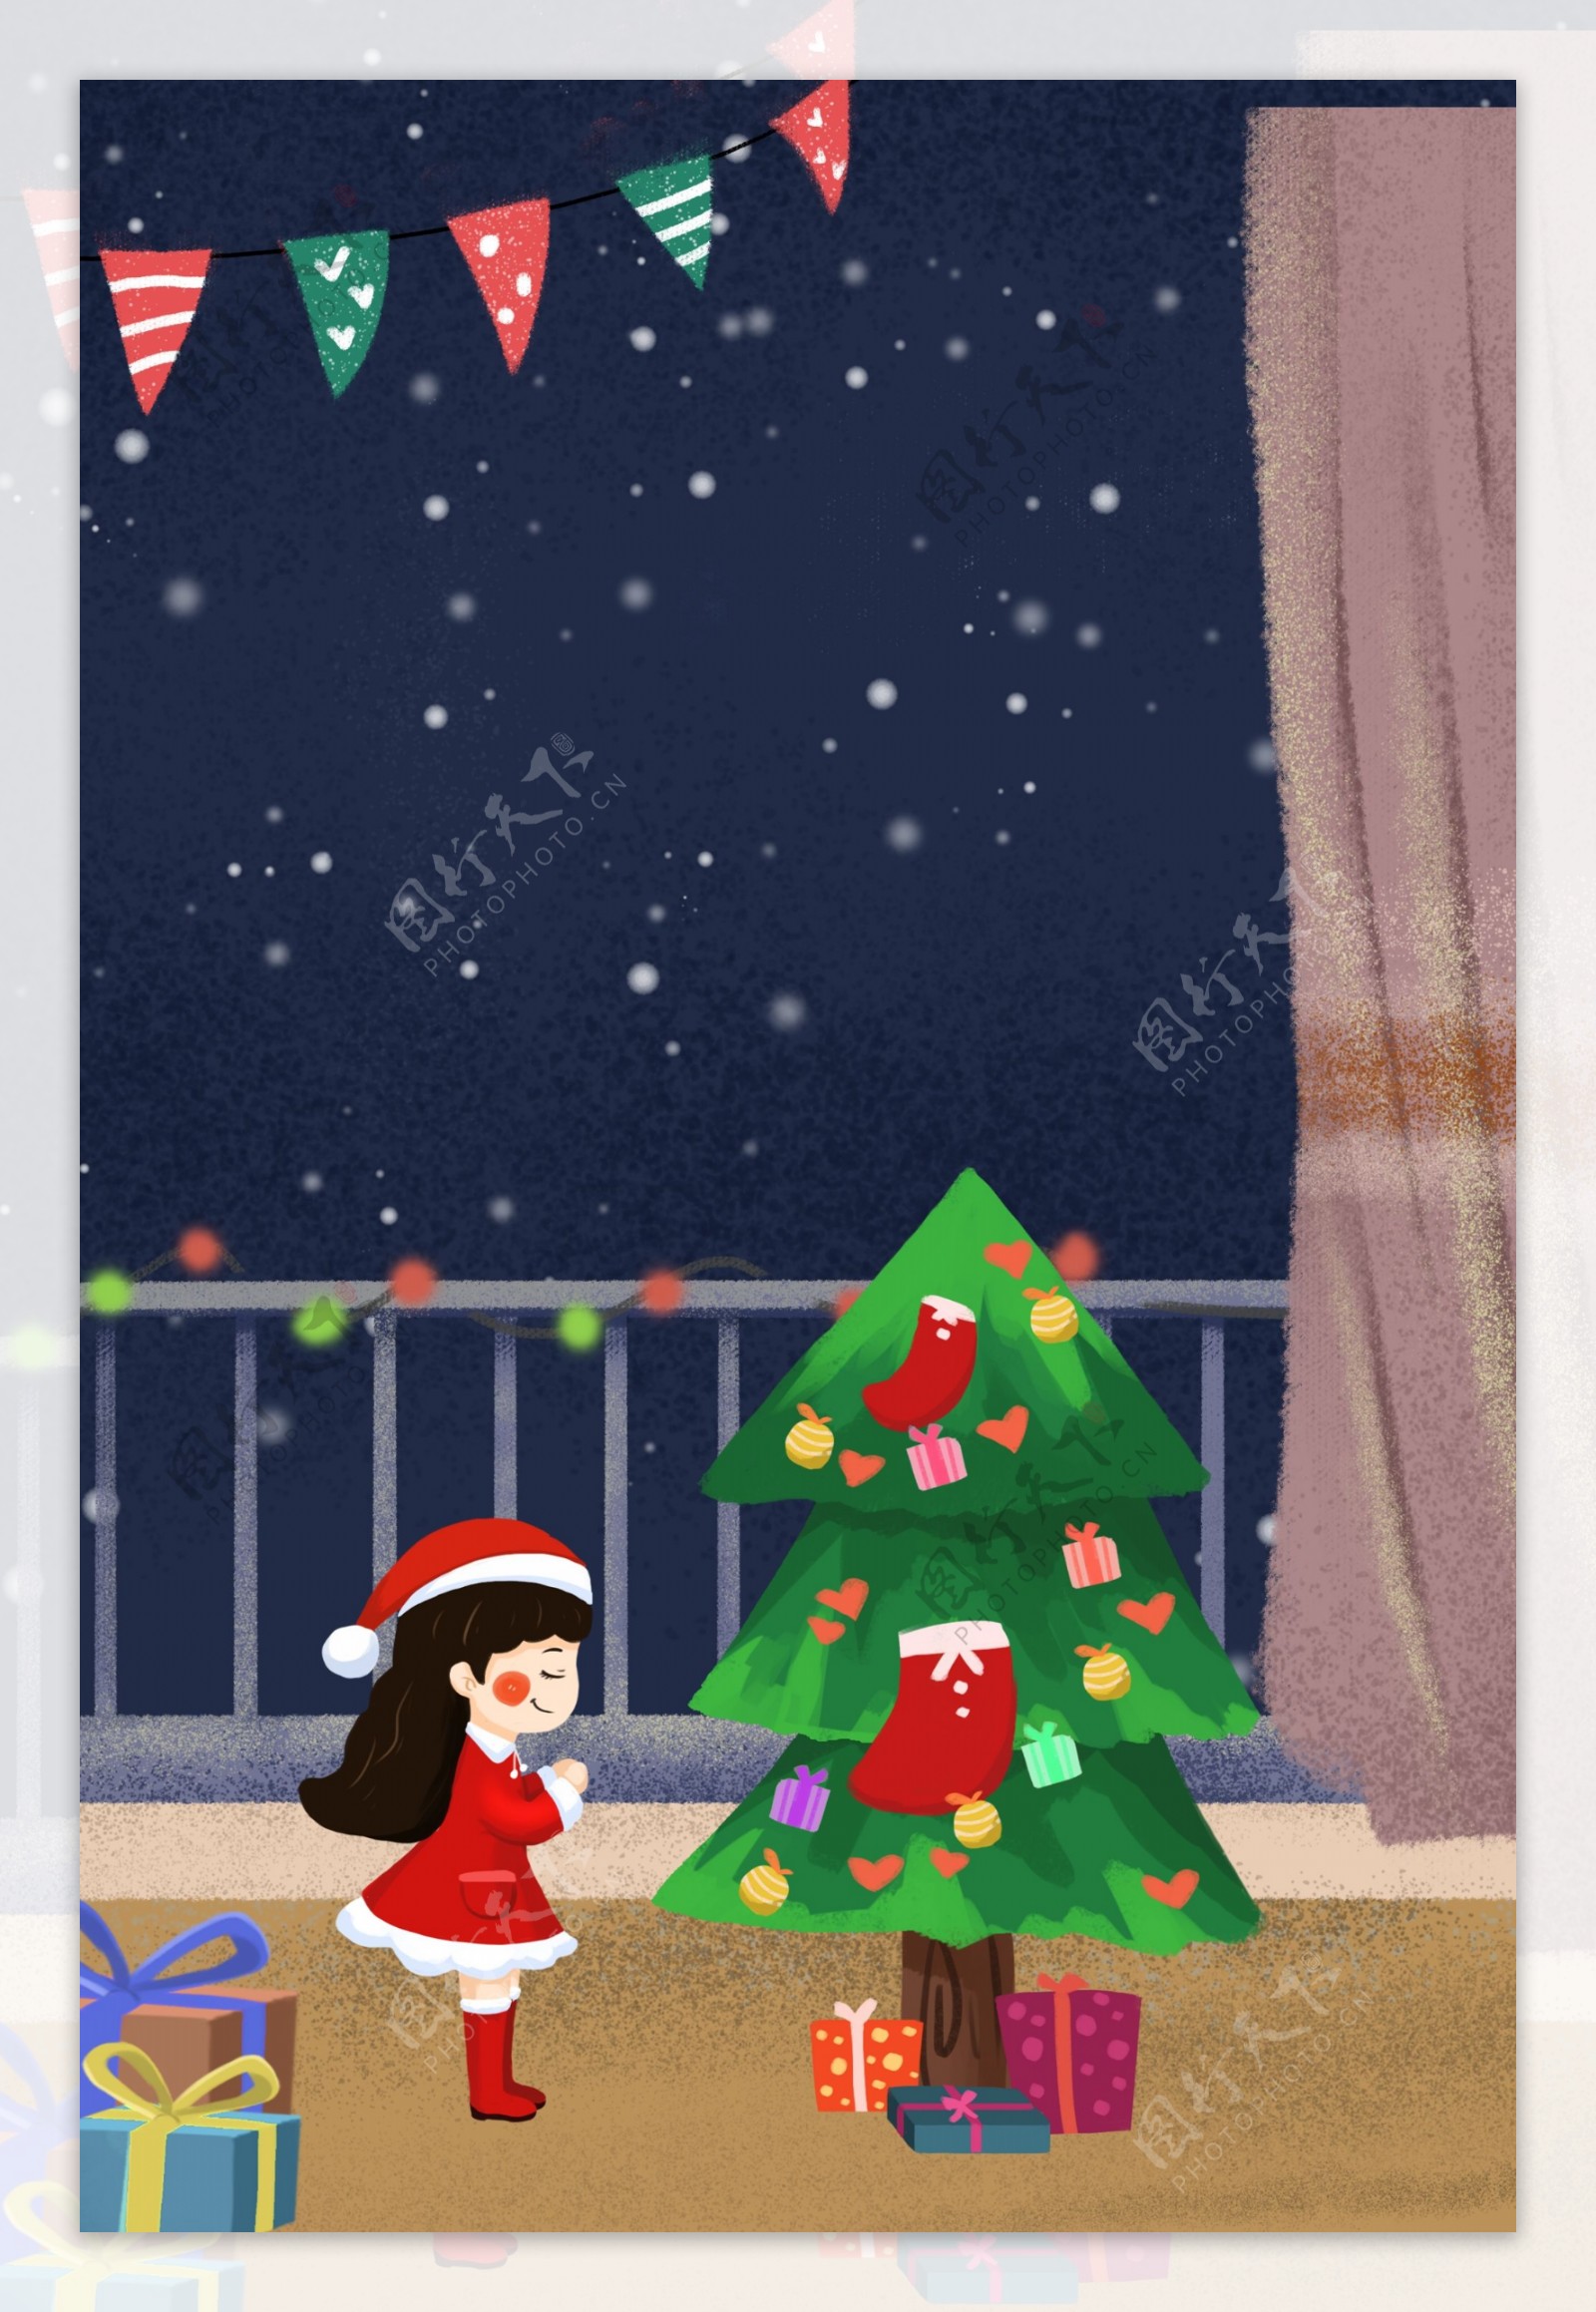 圣诞节阳台许愿的女孩插画背景